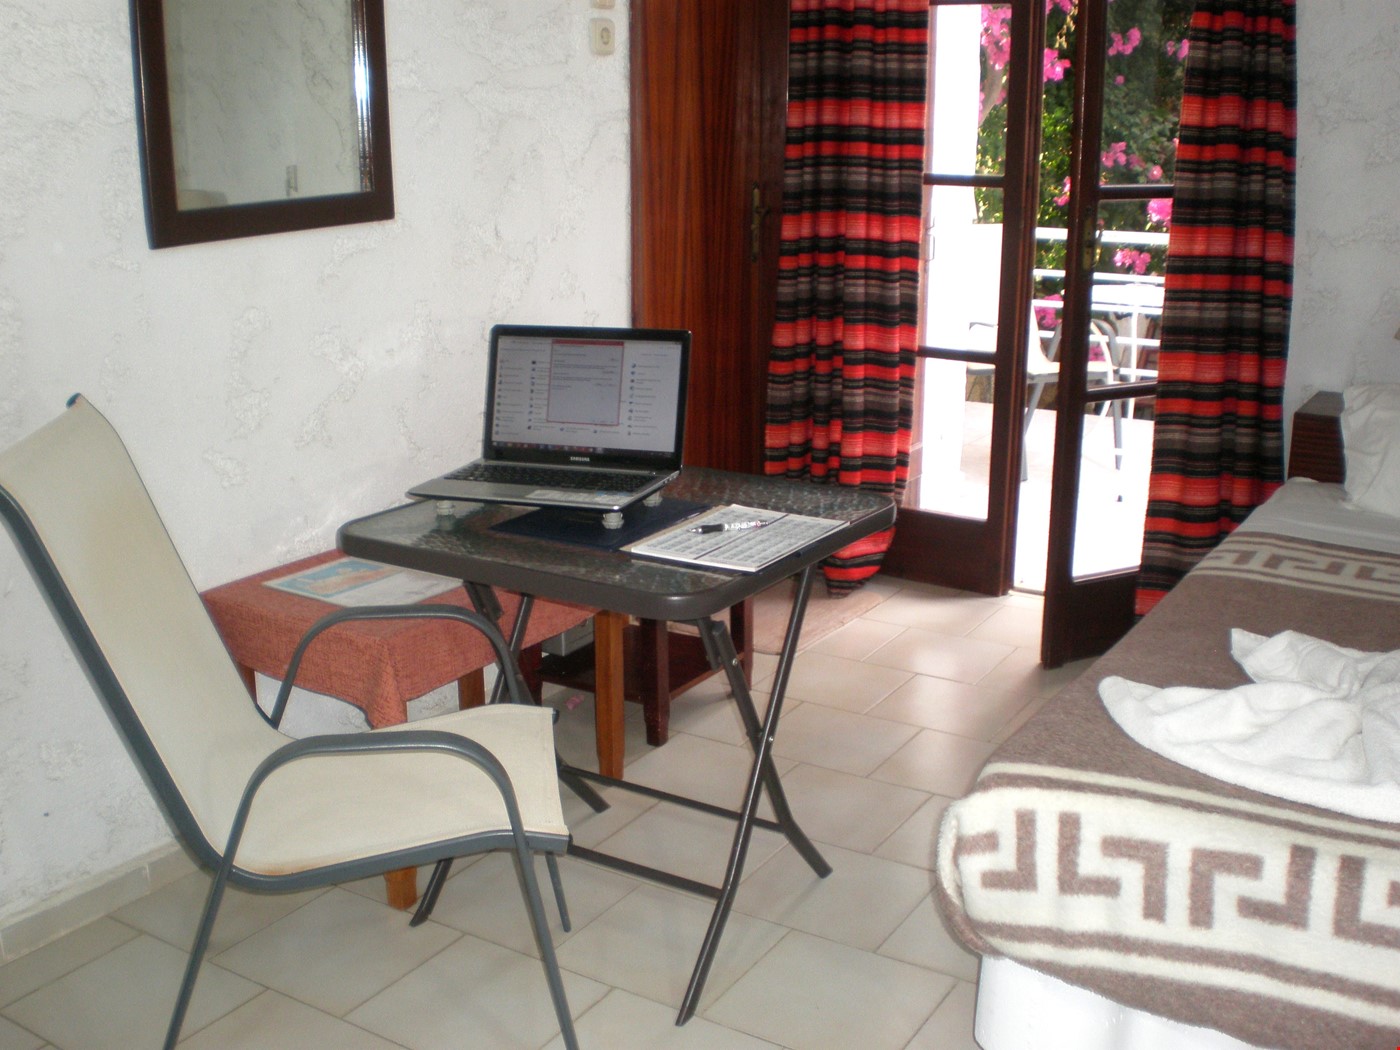 Hotel Pirgos Psilonerou, Platanias, Crete, Chania, Greece nomad remote 9f6bc87a-503d-428c-a47a-f0fe1a4115e3_Workation 4.JPG